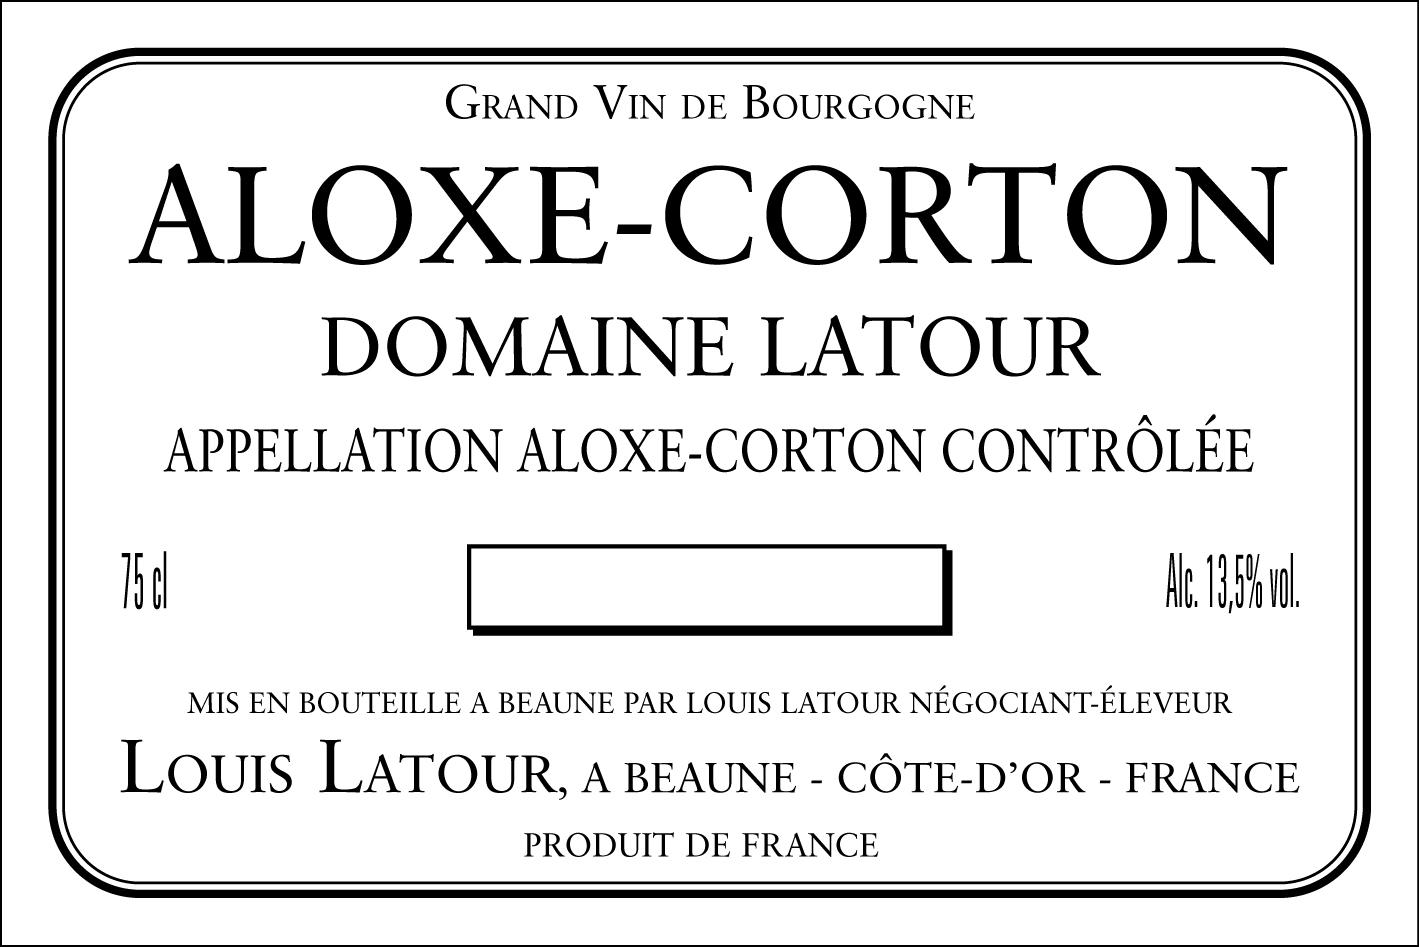 Aloxe Corton Domaine Latour